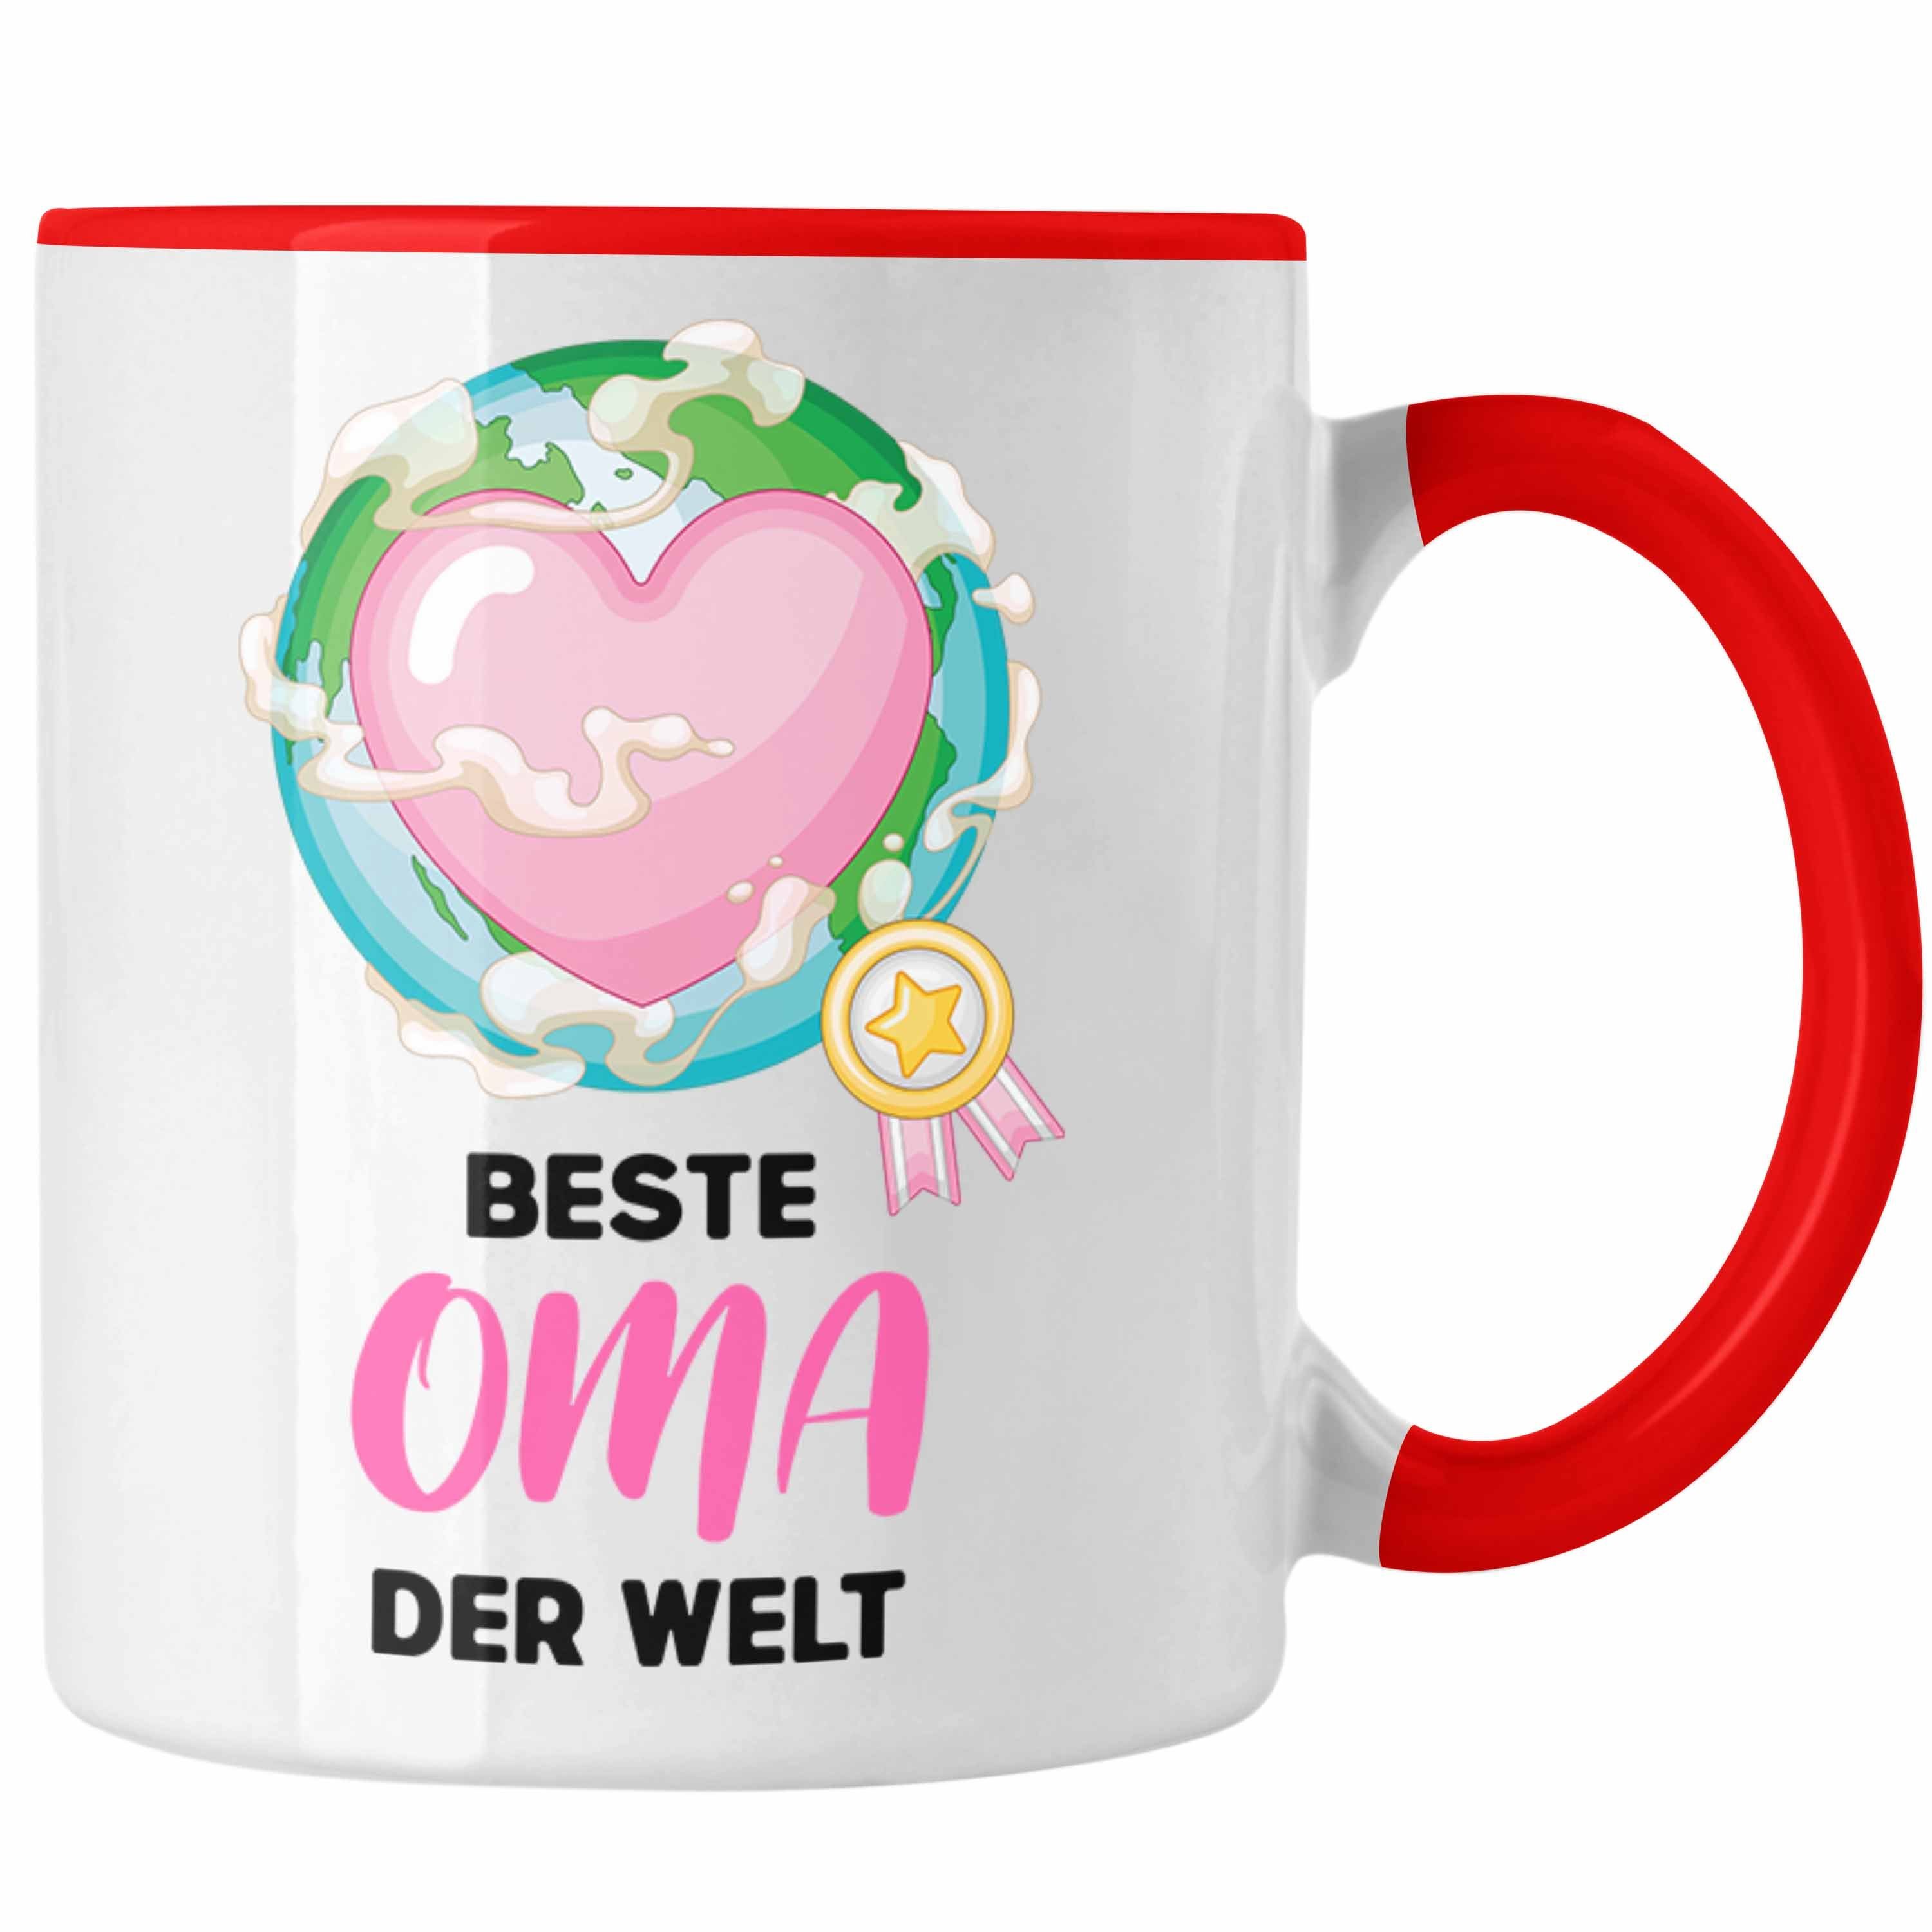 Trendation Tasse Trendation - Beste Oma Der Welt Geschenk Tasse Kaffeetasse Spruch Lustig von Enkel zum Geburtstag Weihnachten Rot